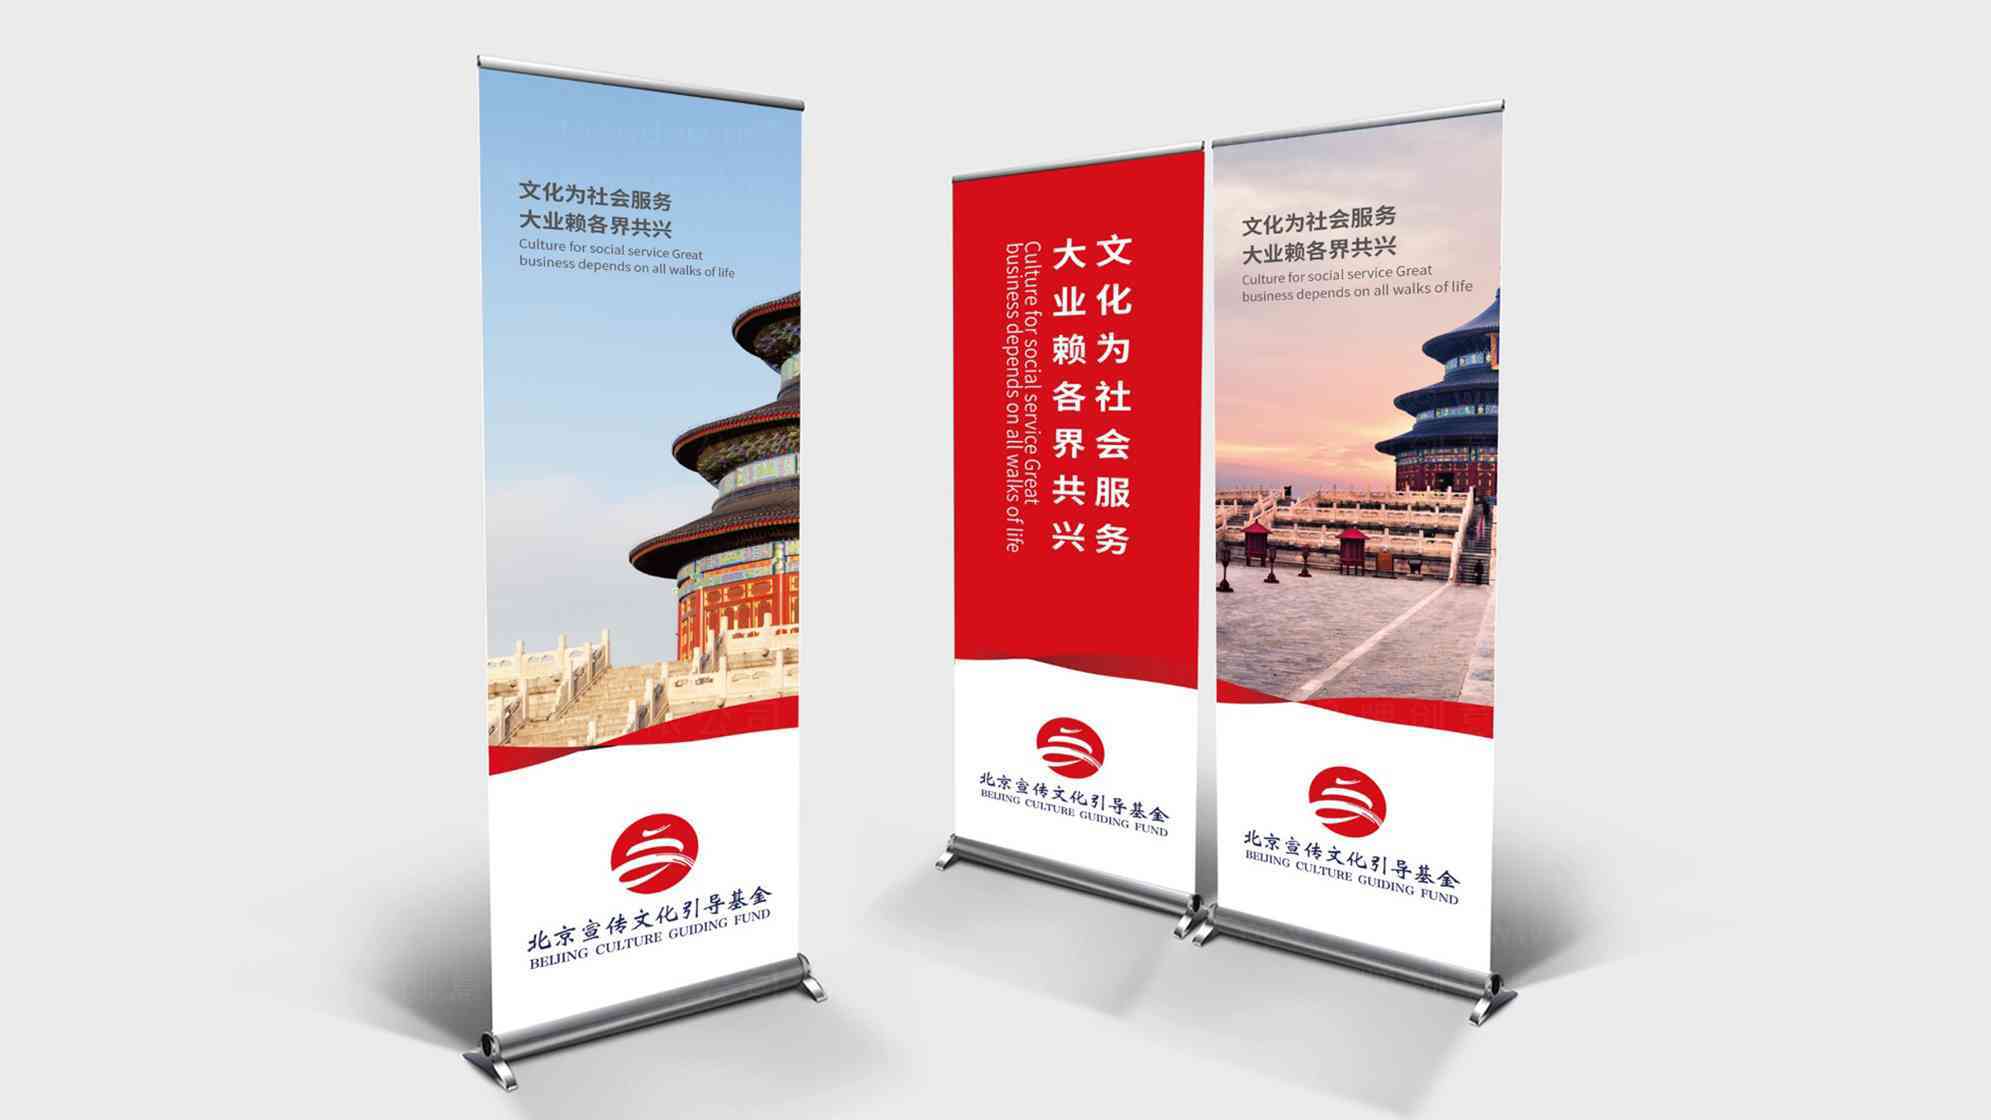 北京宣传文化引导基金文化中心logo设计图片素材_4